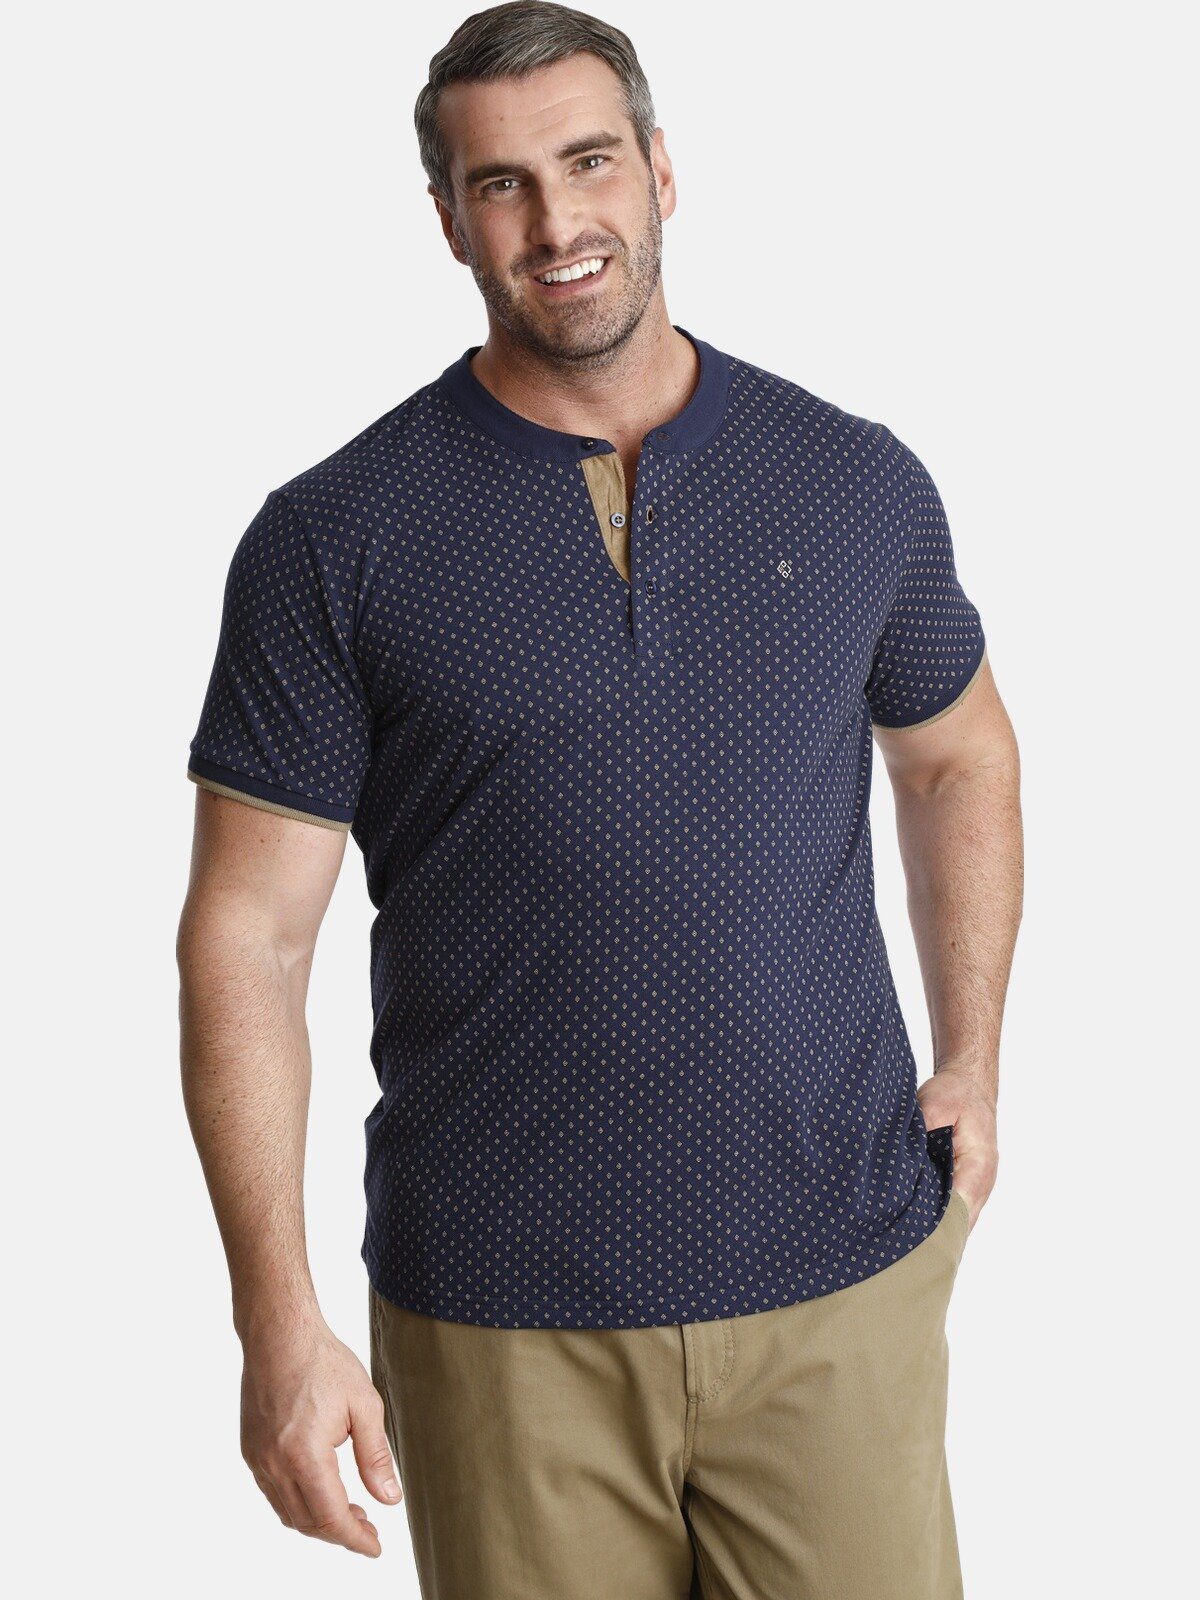 Charles Colby T-Shirt DUKE COLIN in minimal Rautendesign dunkelblau